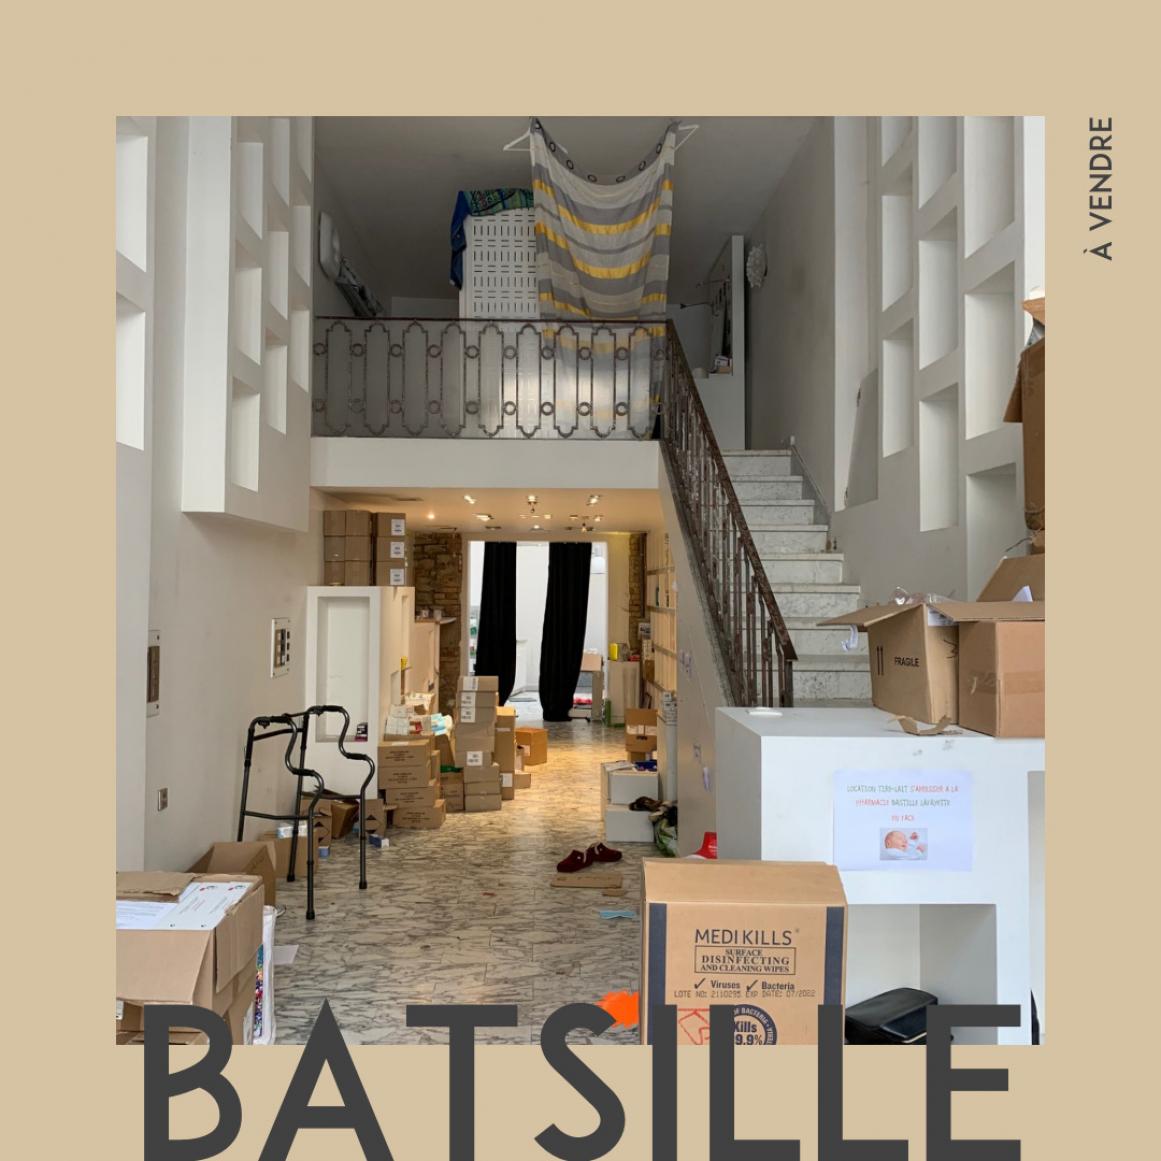 BASTILLE - Photo 1